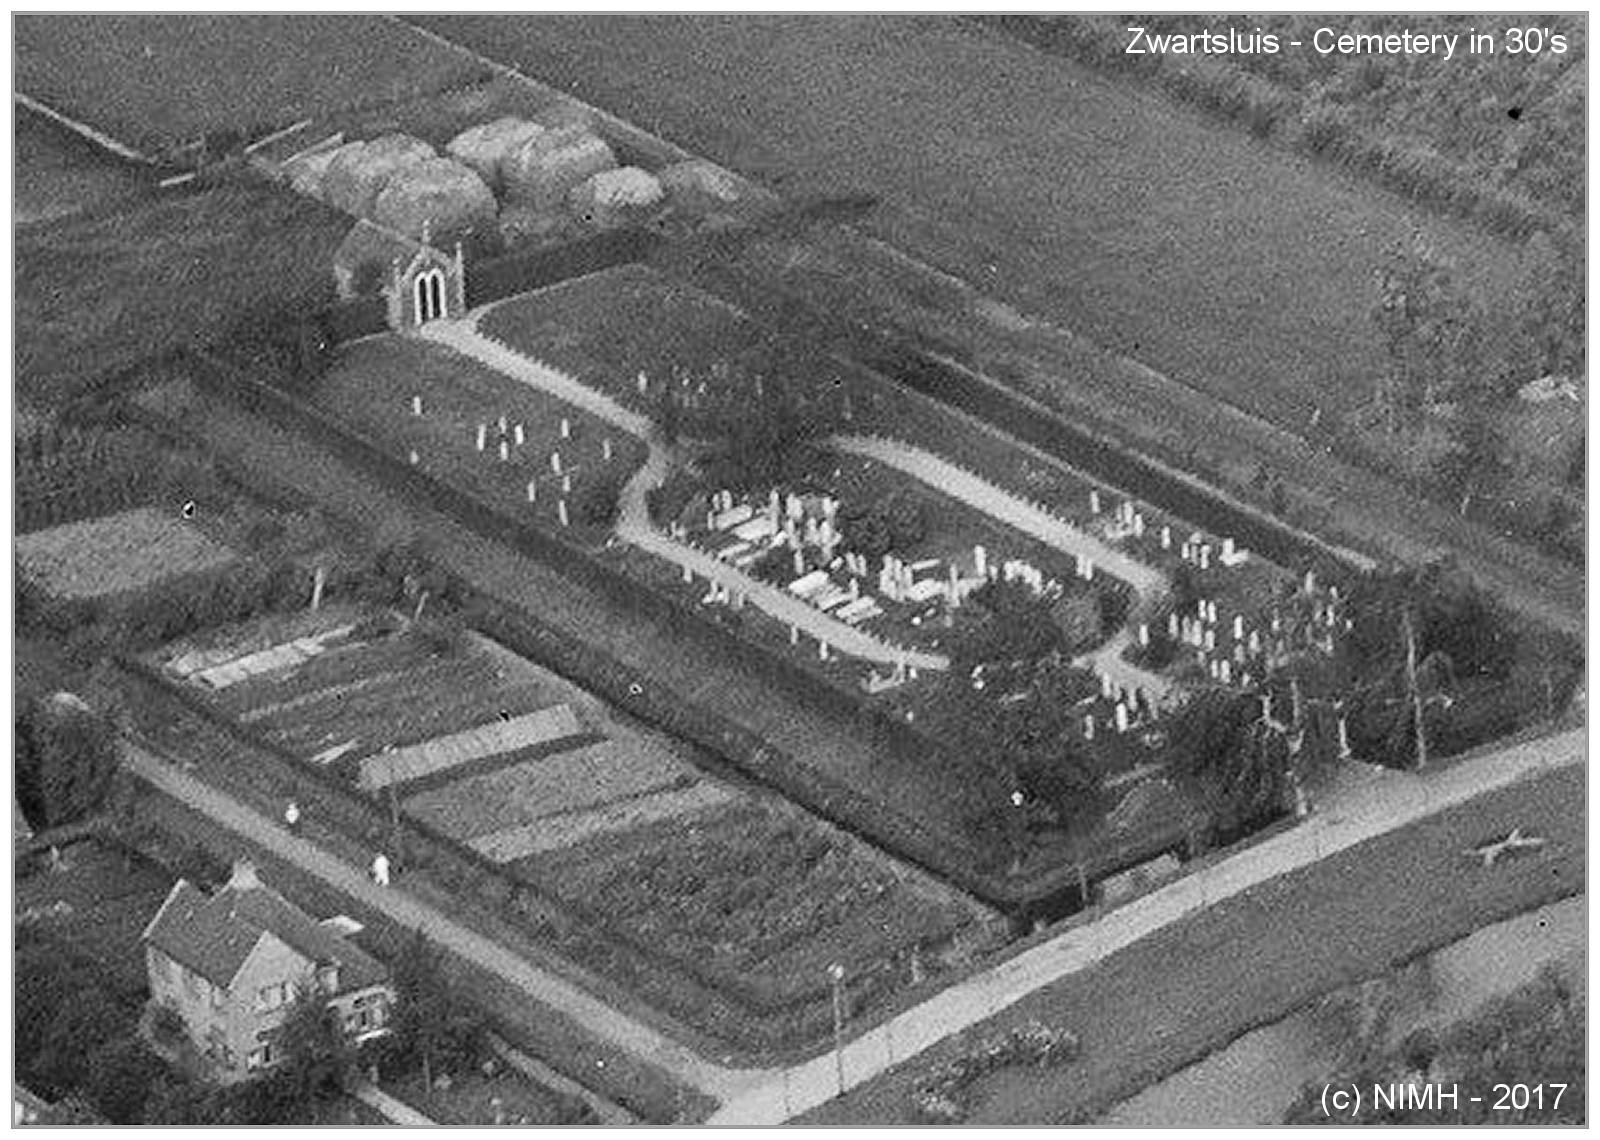 Cemetery Zwartsluis in the 30's - via NIMH